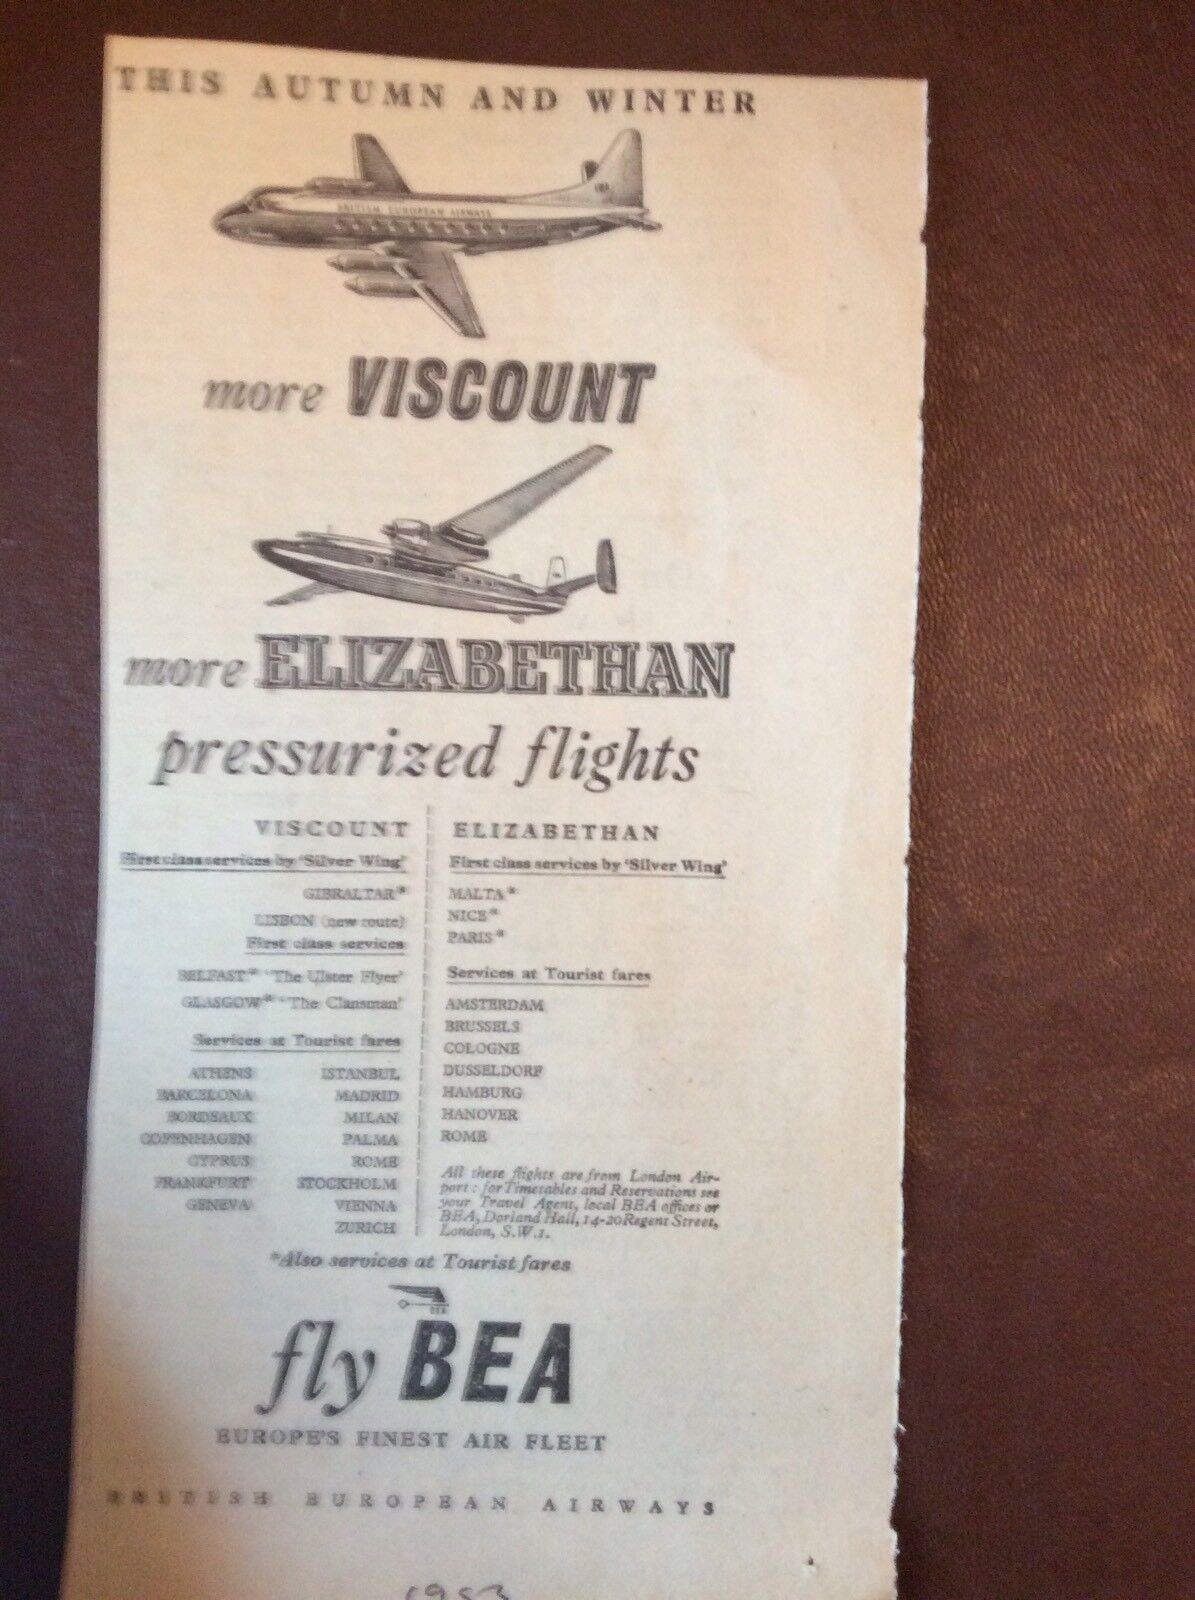 M62-9 Ephemera 1955 Advert B E A Fly Elizabethan Viscount